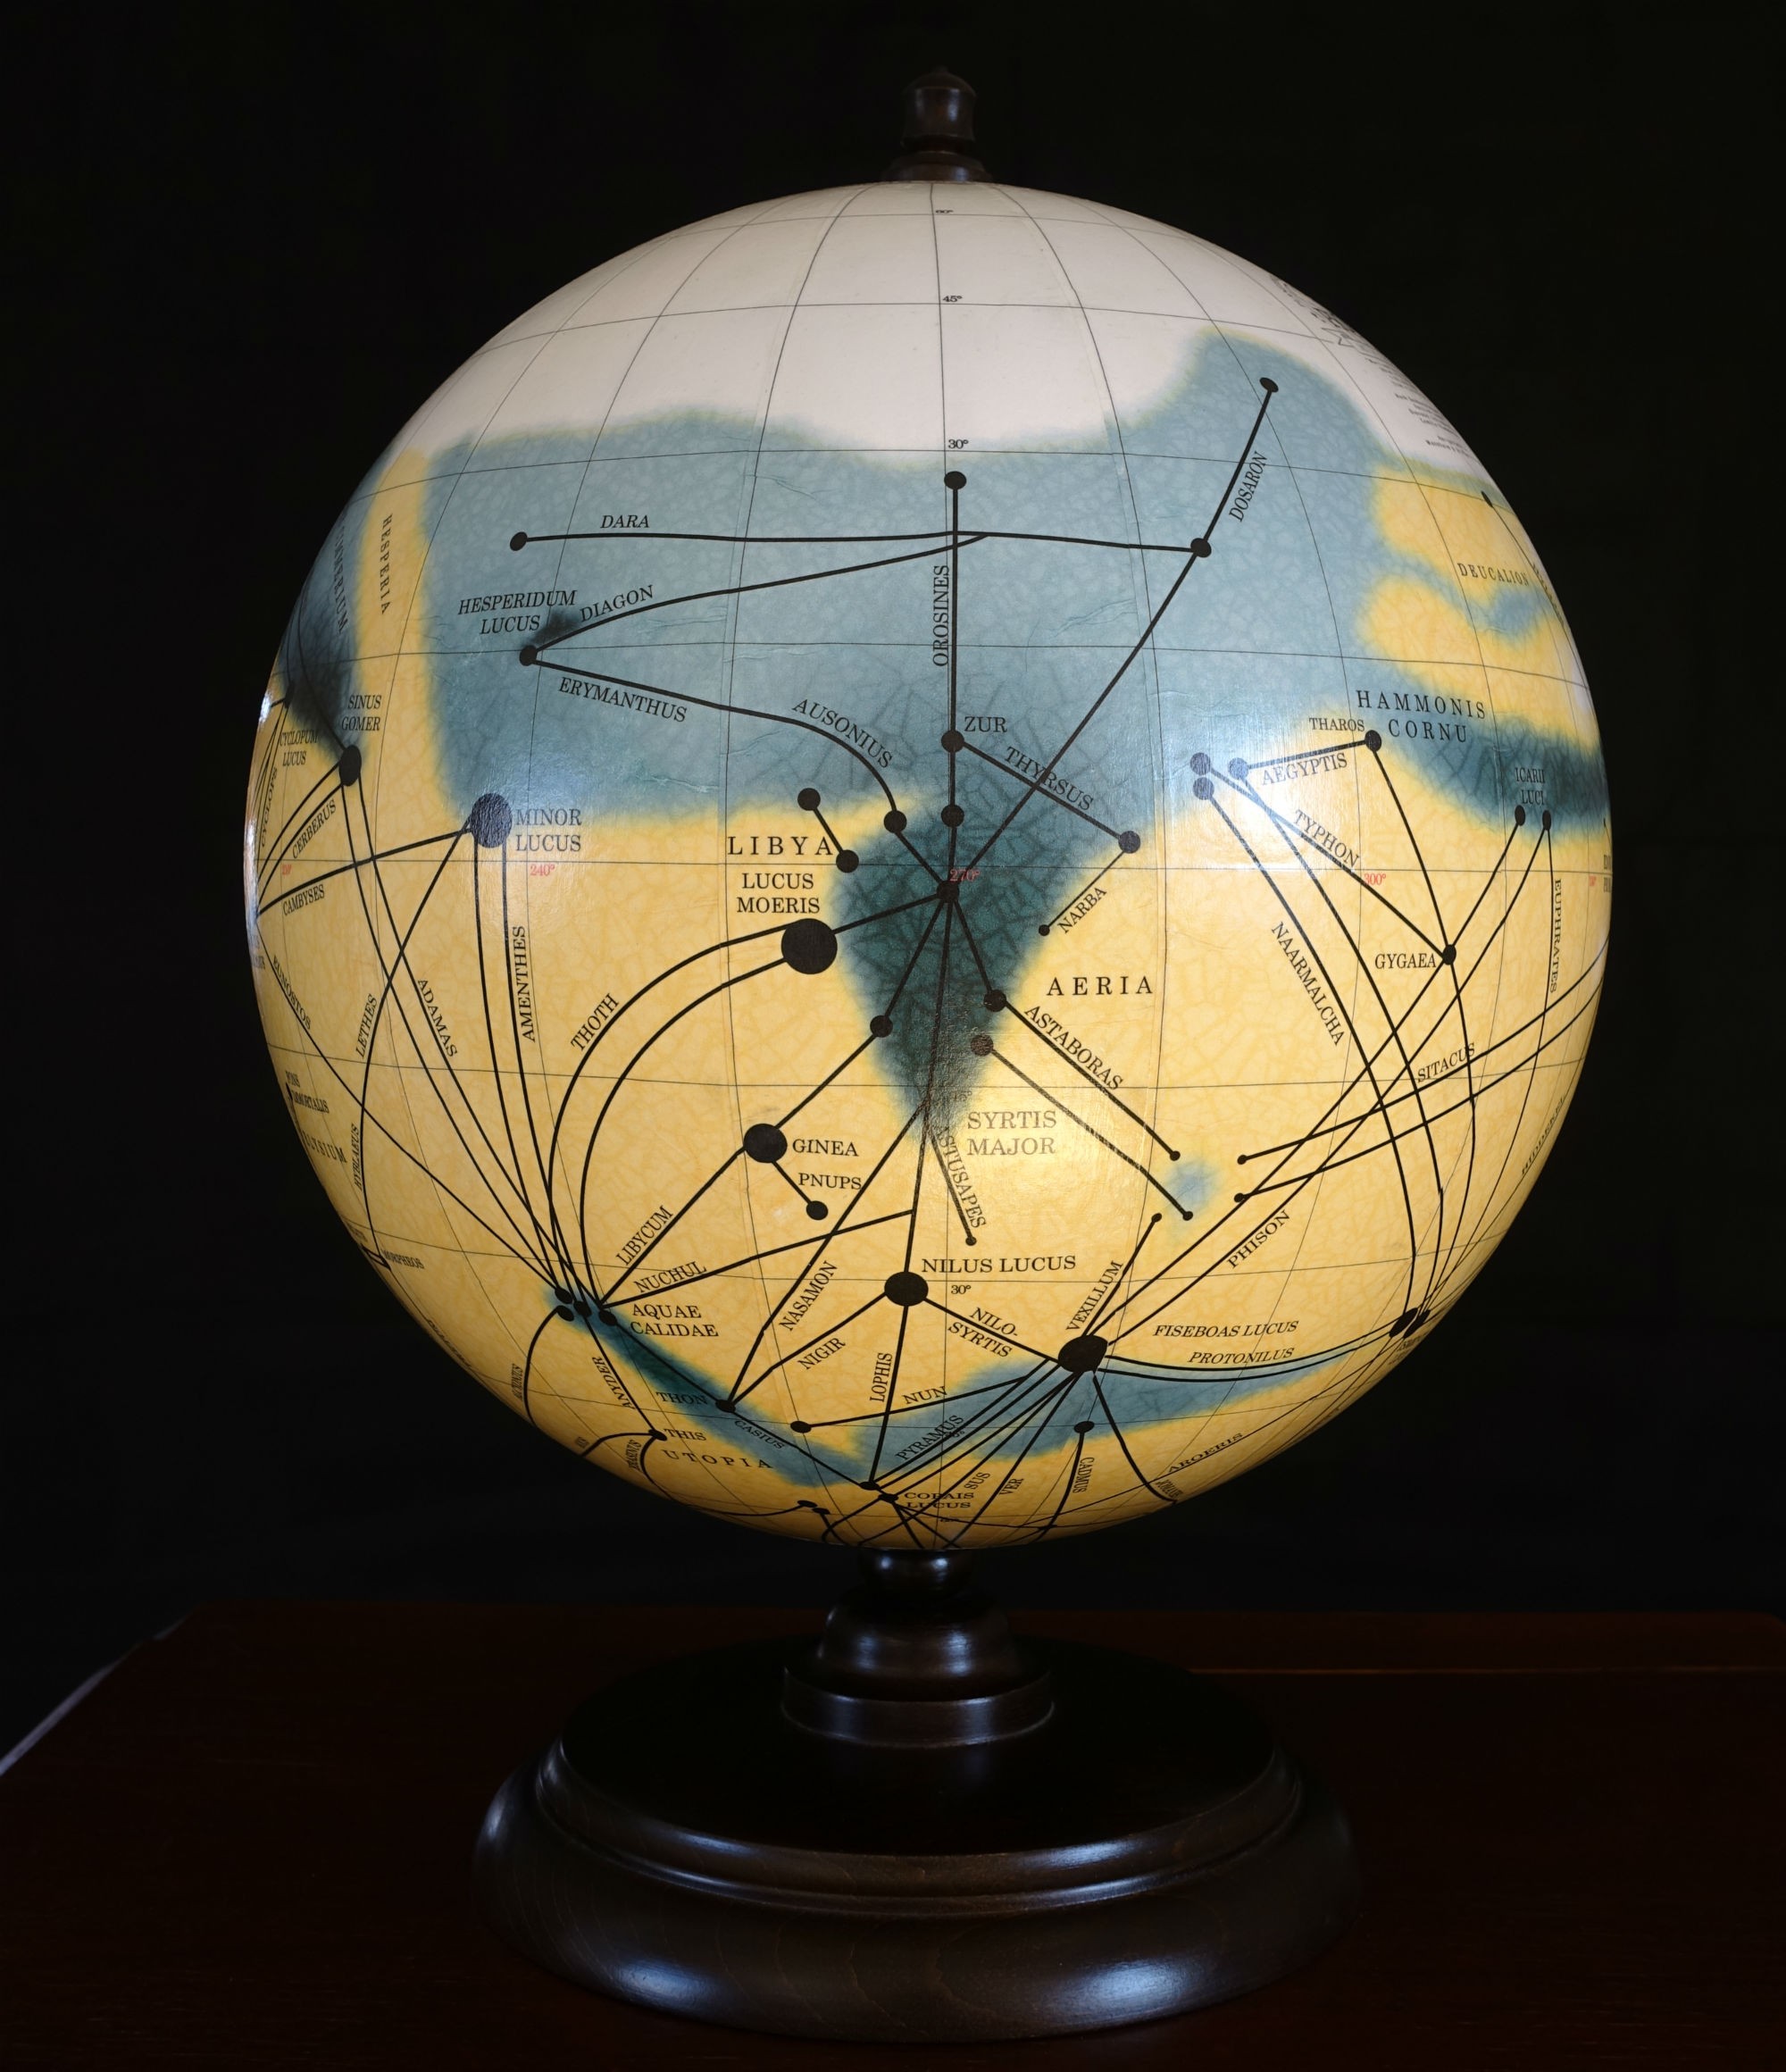 Il primo mappamondo di Mars Globes, con la storica mappa di Marte realizzata nel 1905 da Percival Lowell